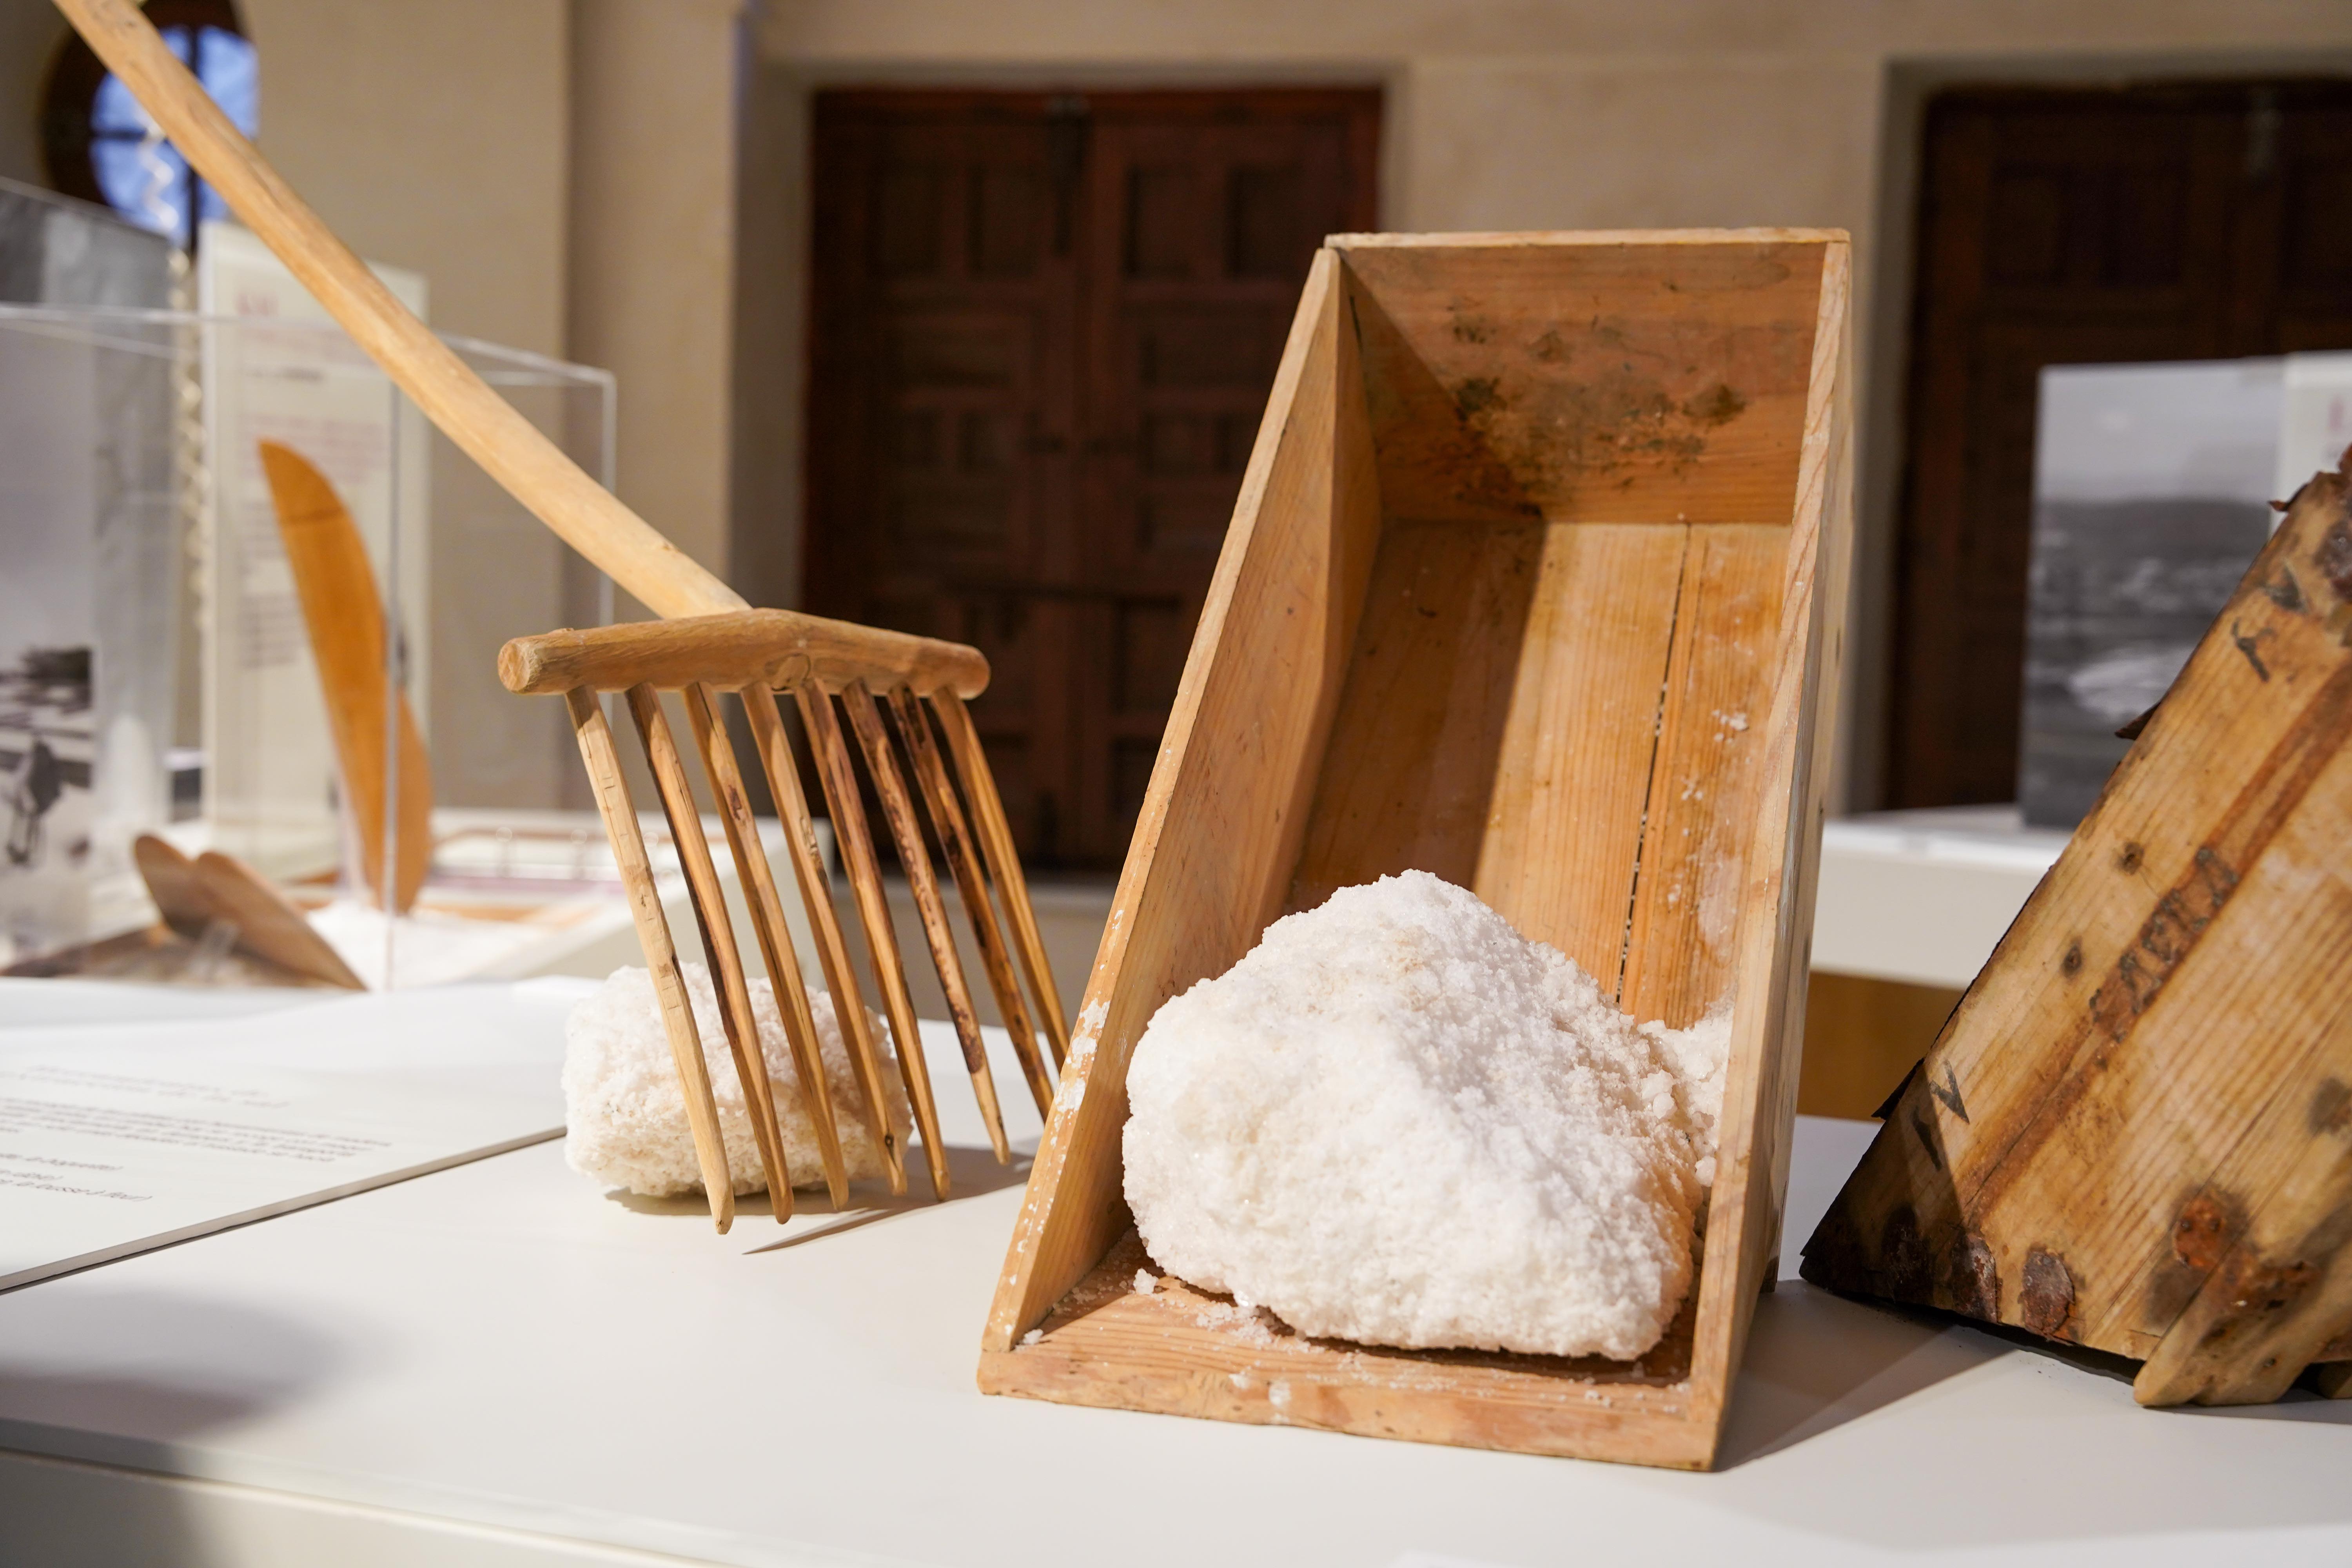 ‘Paisaje y mujeres de sal’, la exposición sobre los oficios y el paisaje de las minas salinas de La Malahá, se exhibe ya en el Palacio de La Madraza